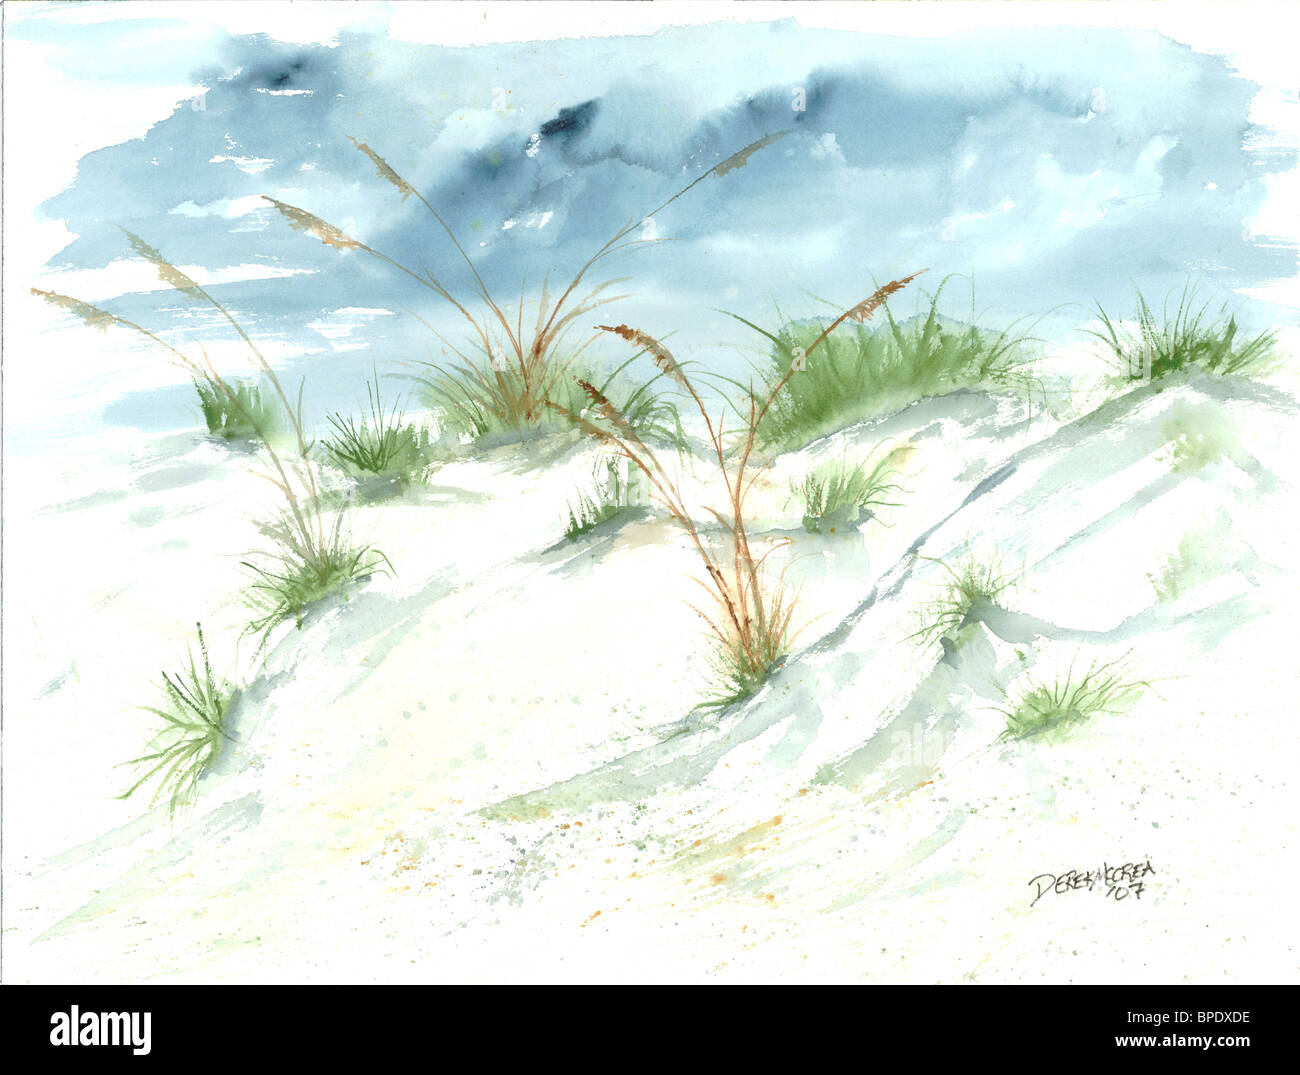 Sanddünen Strand moderne realistische Seelandschaft Küsten nautischen marine Sommer Aquarell Kunst Malerei Aquarell Urlaub Bilder Stockfoto